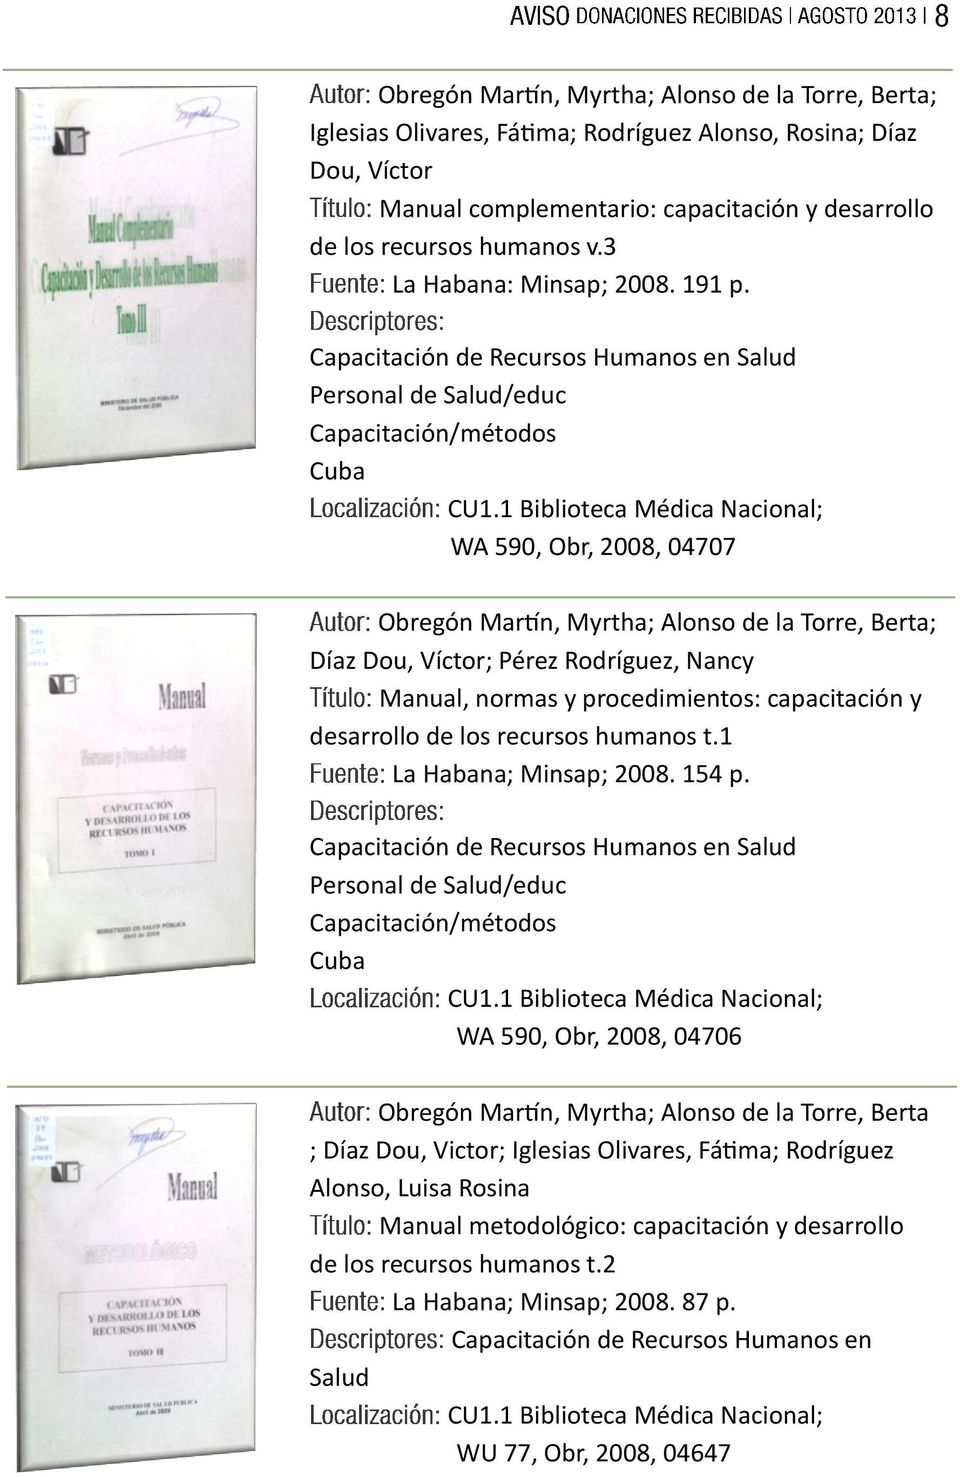 Capacitación de Recursos Humanos en Salud Personal de Salud/educ Capacitación/métodos Cuba WA 590, Obr, 2008, 04707 Obregón Martín, Myrtha; Alonso de la Torre, Berta; Díaz Dou, Víctor; Pérez